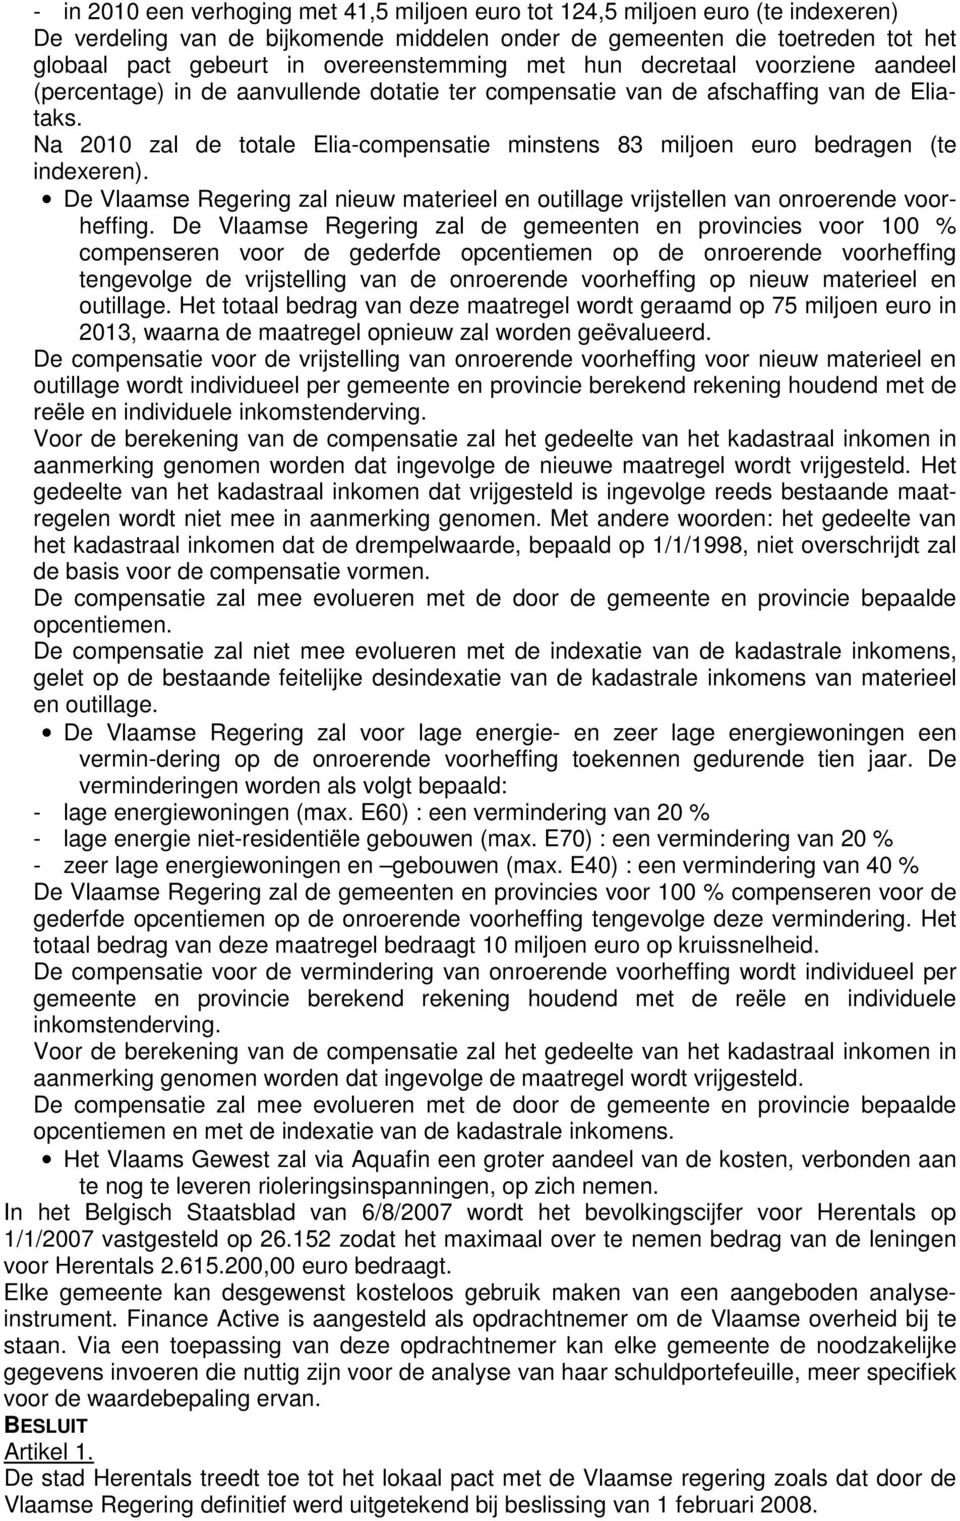 Na 2010 zal de totale Elia-compensatie minstens 83 miljoen euro bedragen (te indexeren). De Vlaamse Regering zal nieuw materieel en outillage vrijstellen van onroerende voorheffing.